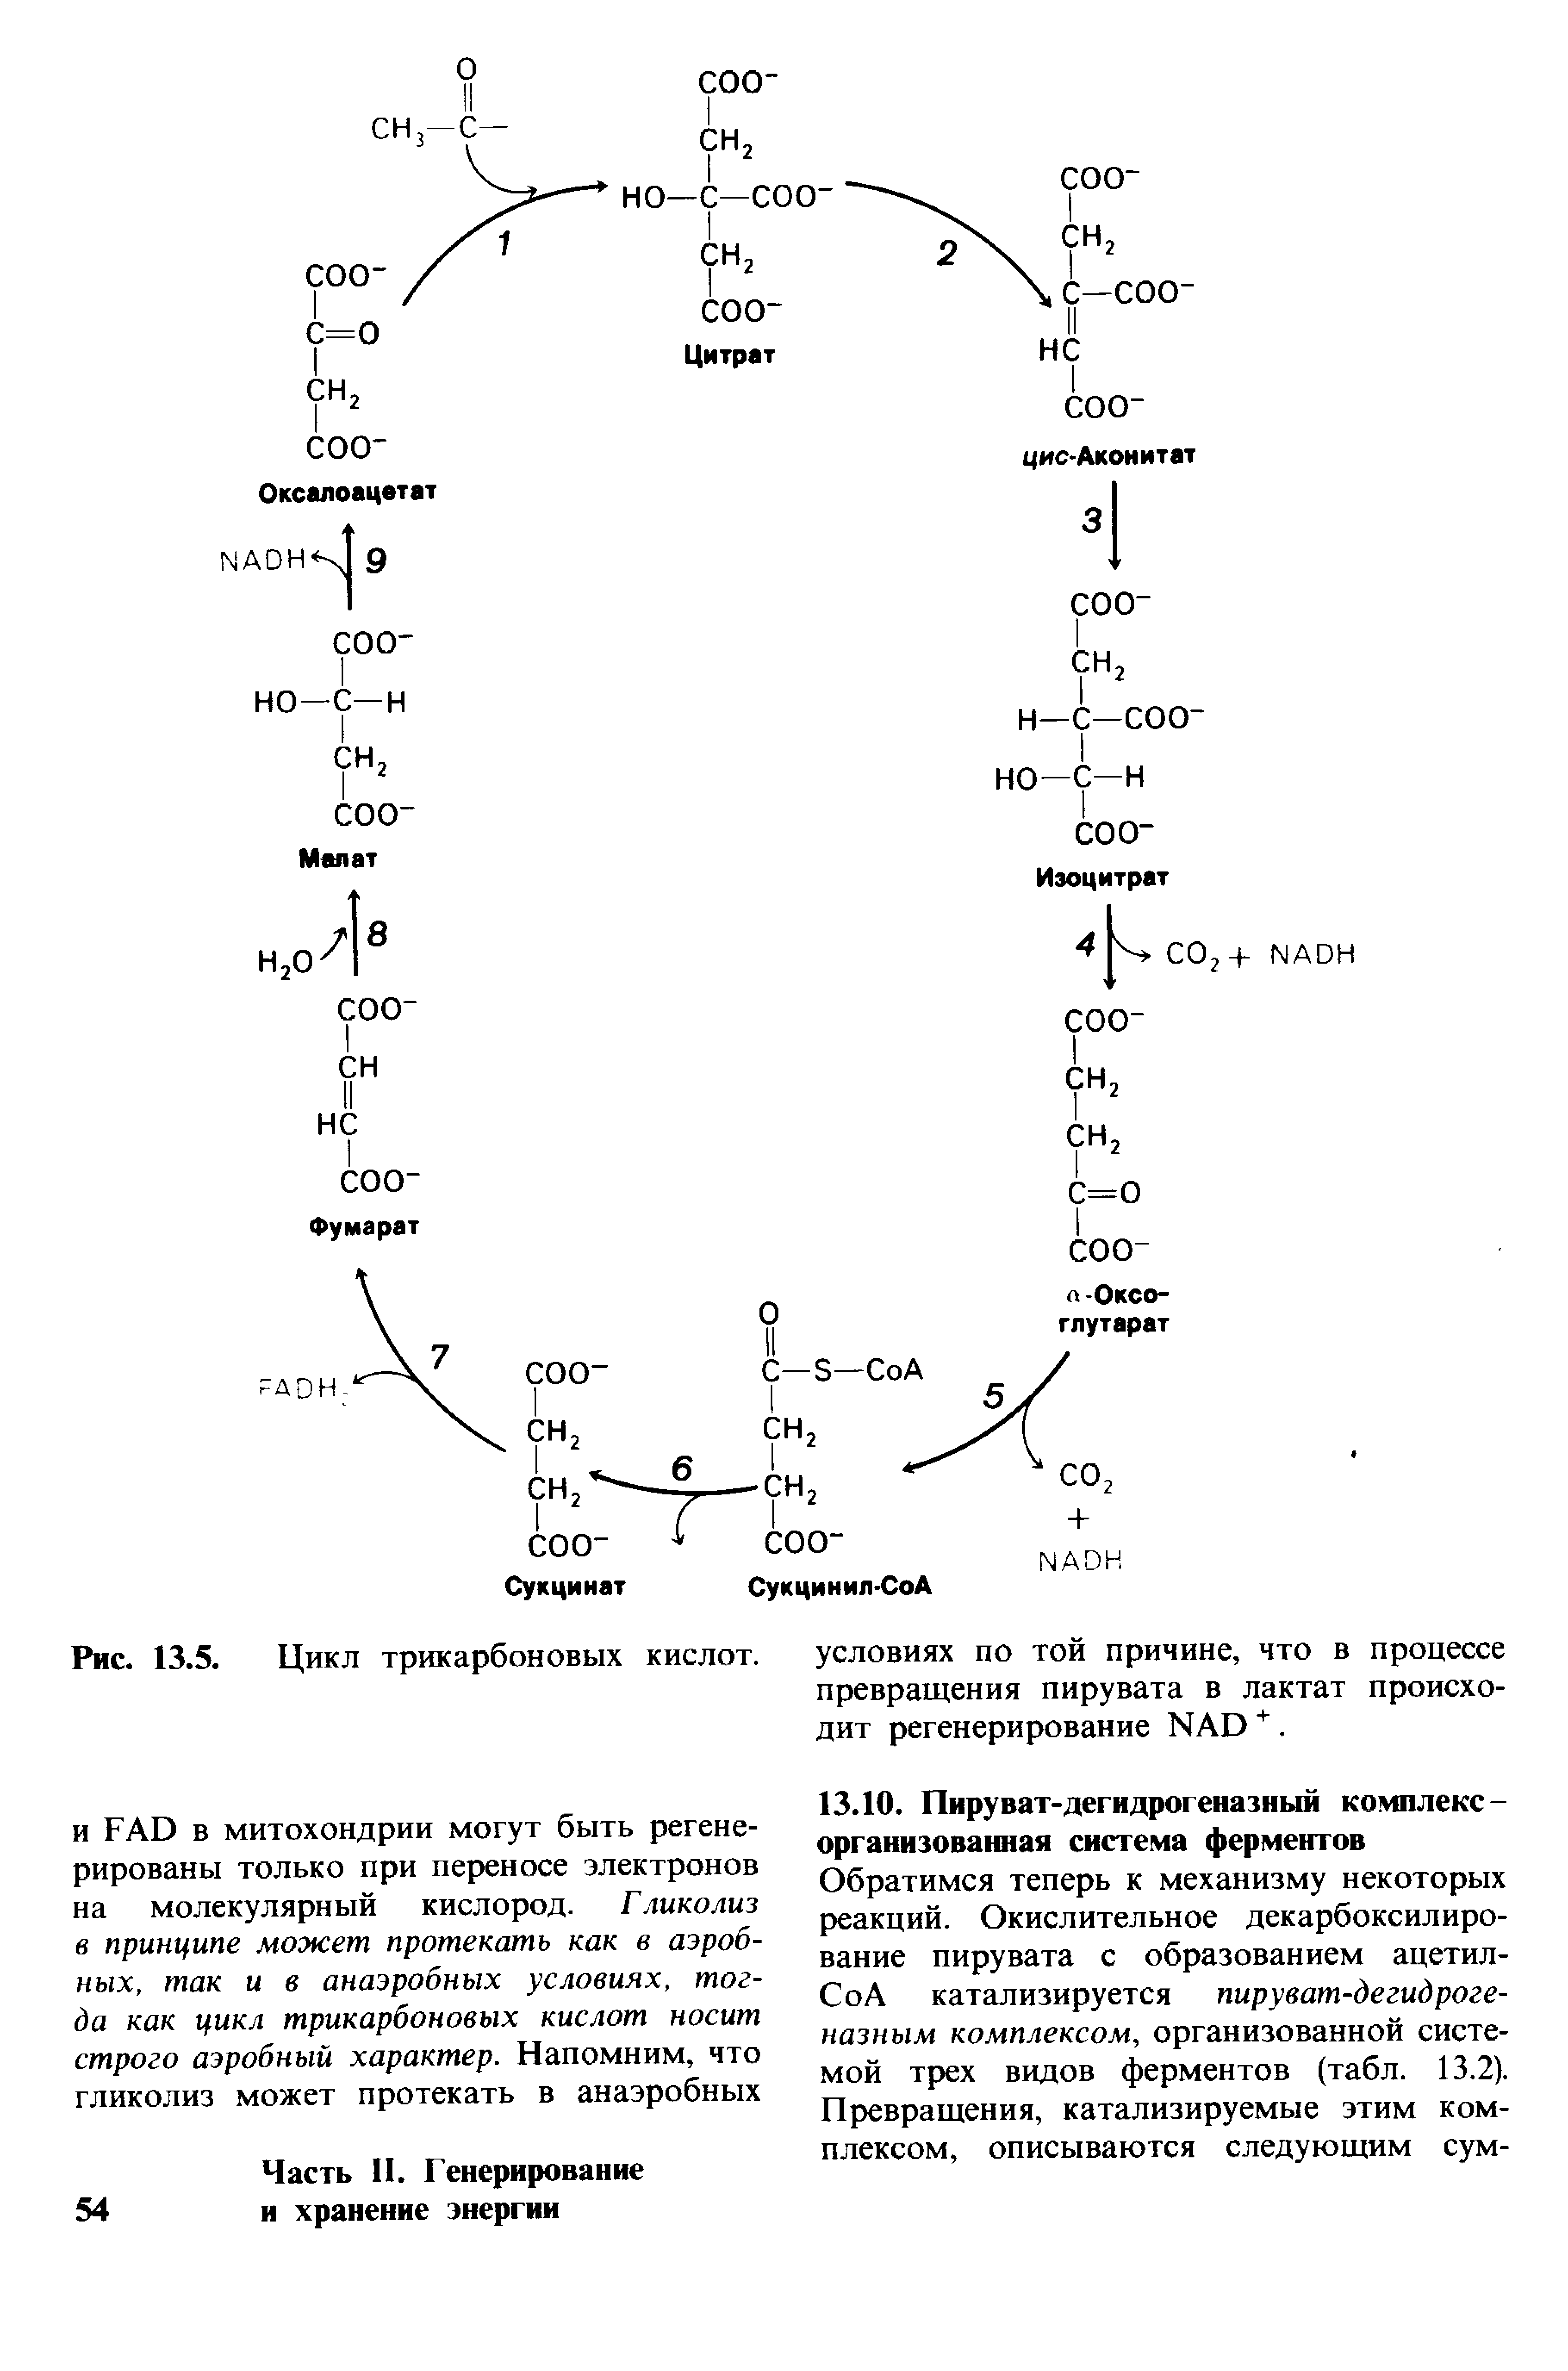 Цикл трикарбоновых кислот этапы. Цикл трикарбоновых кислот. Схема превращений метаболитов в цикле трикарбоновых кислот. Коэнзим а участие в цикле трикарбоновых кислот. Оксалоацетат и цикл трикарбоновых кислот.